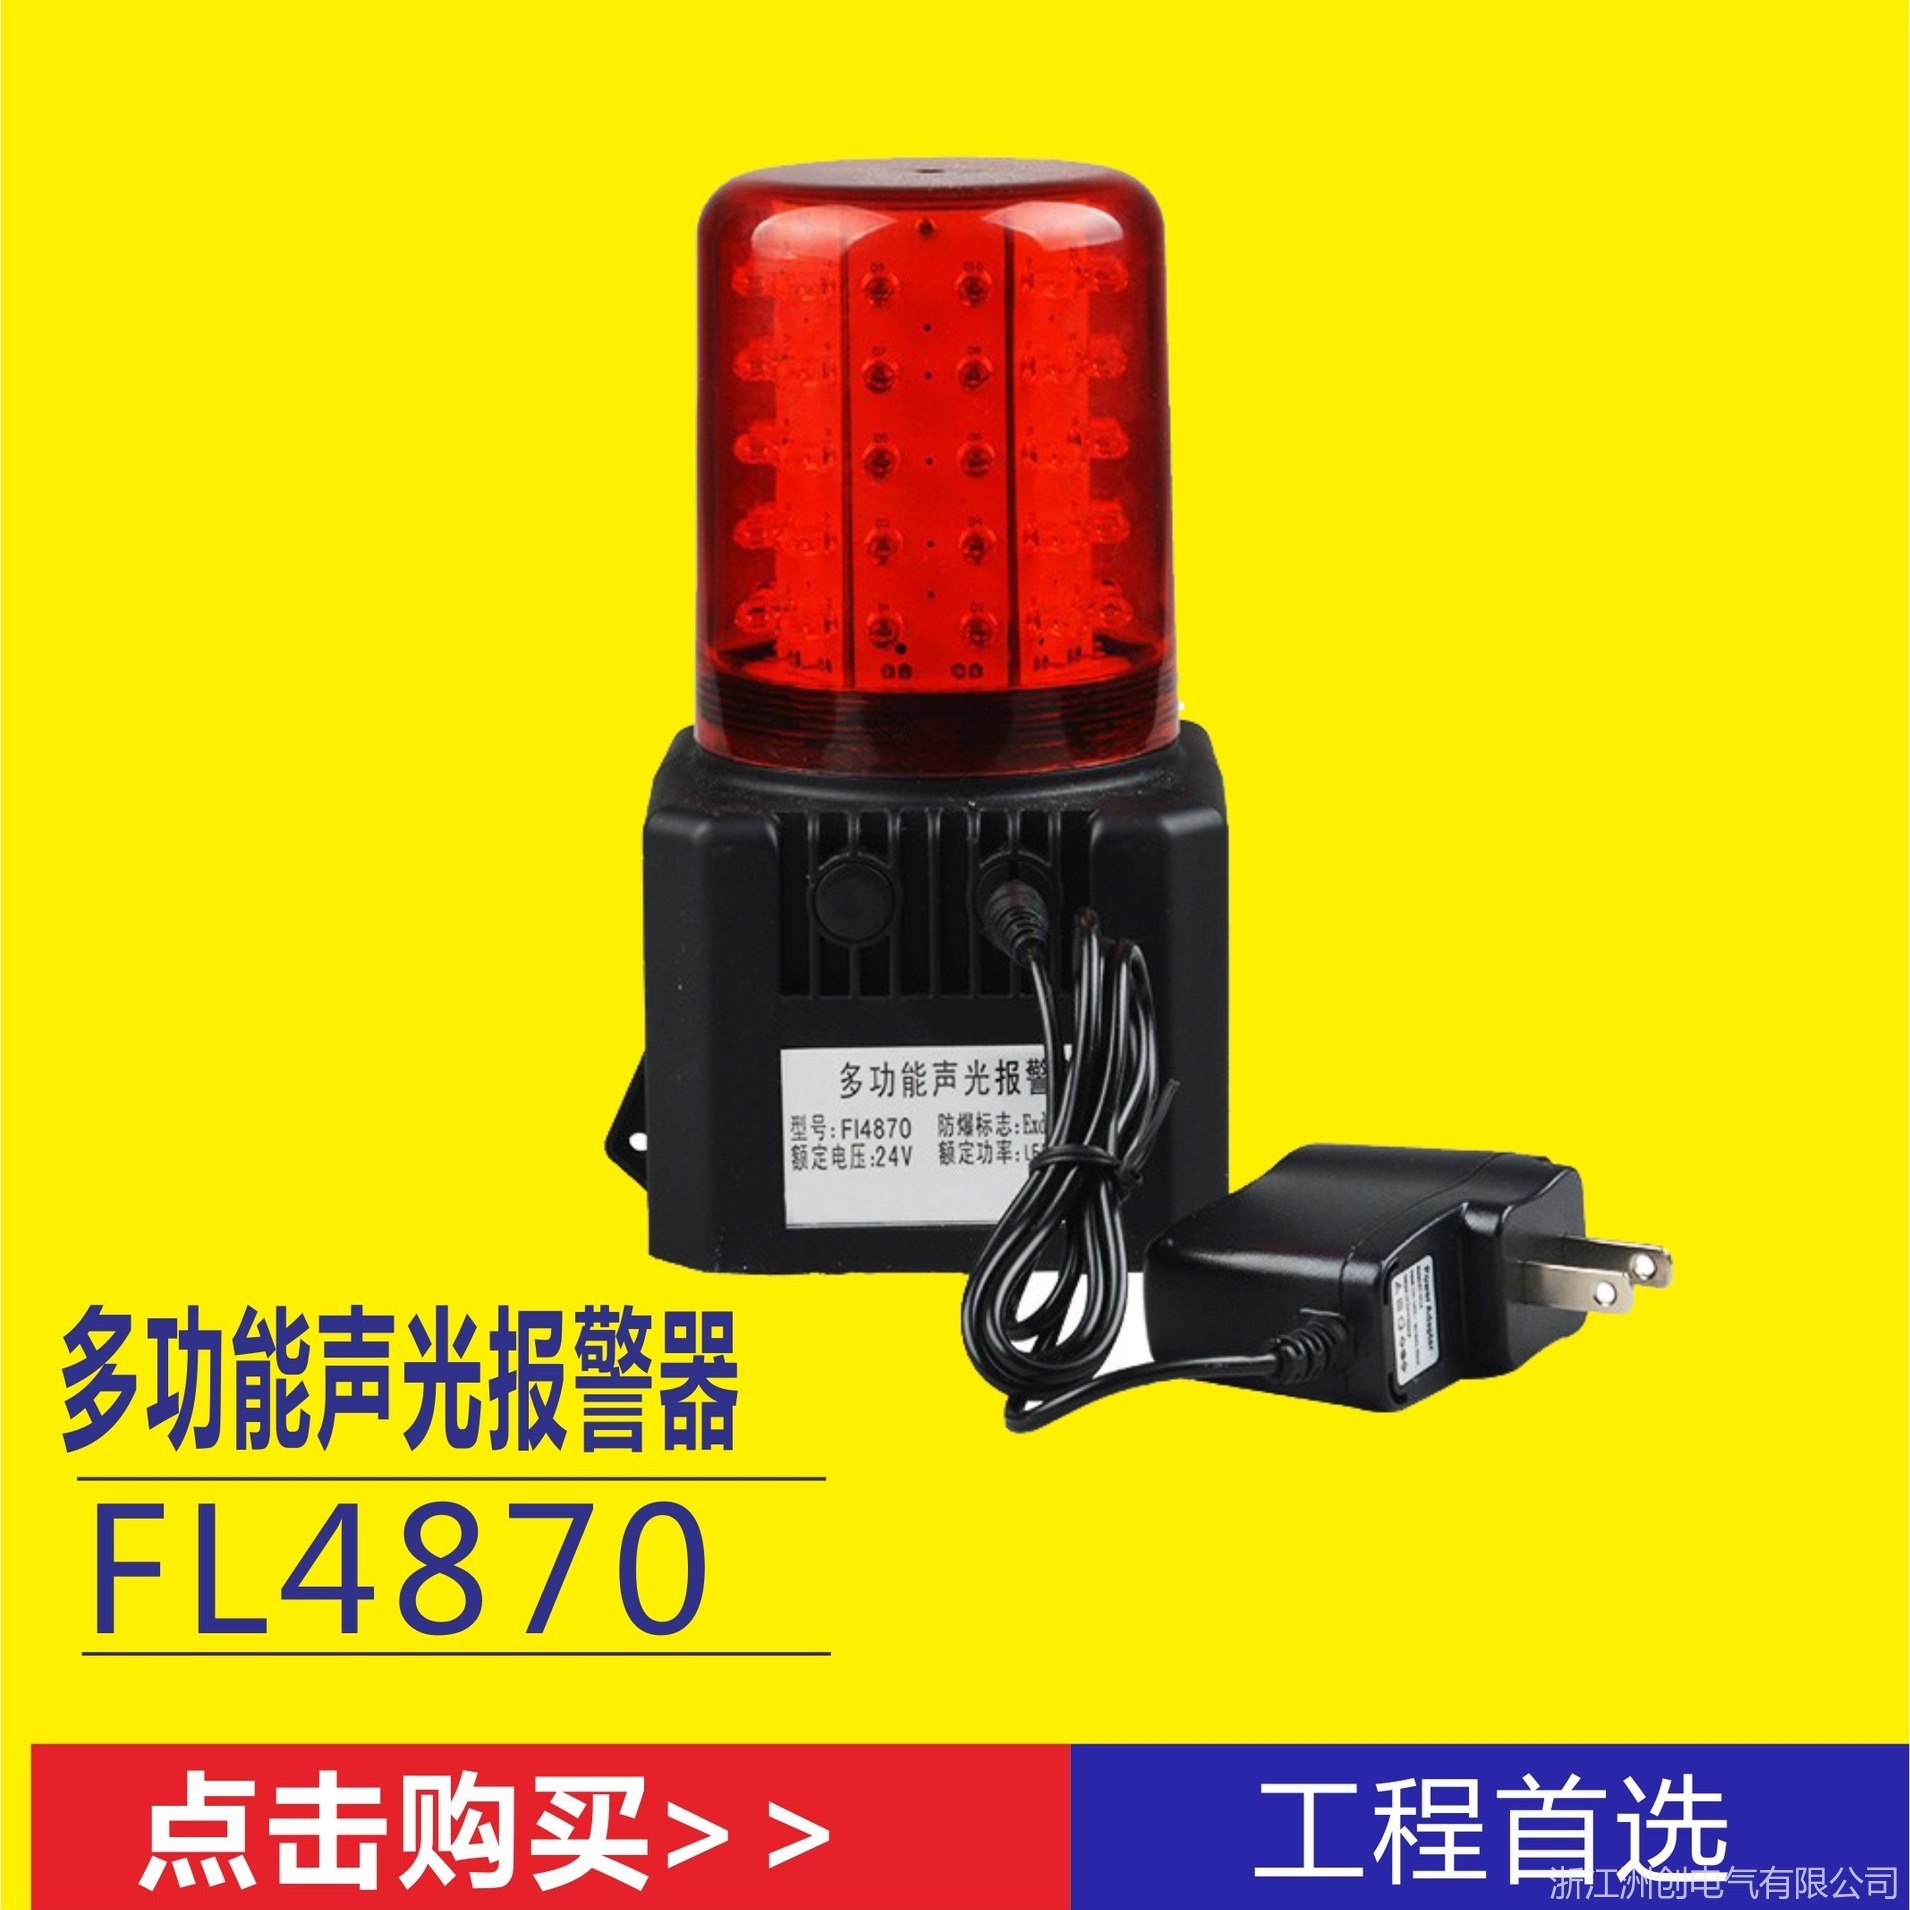 BJQ290施工场所信号指示灯  充电式磁力吸附声光报警器 铁路车辆调度光声报警提示灯